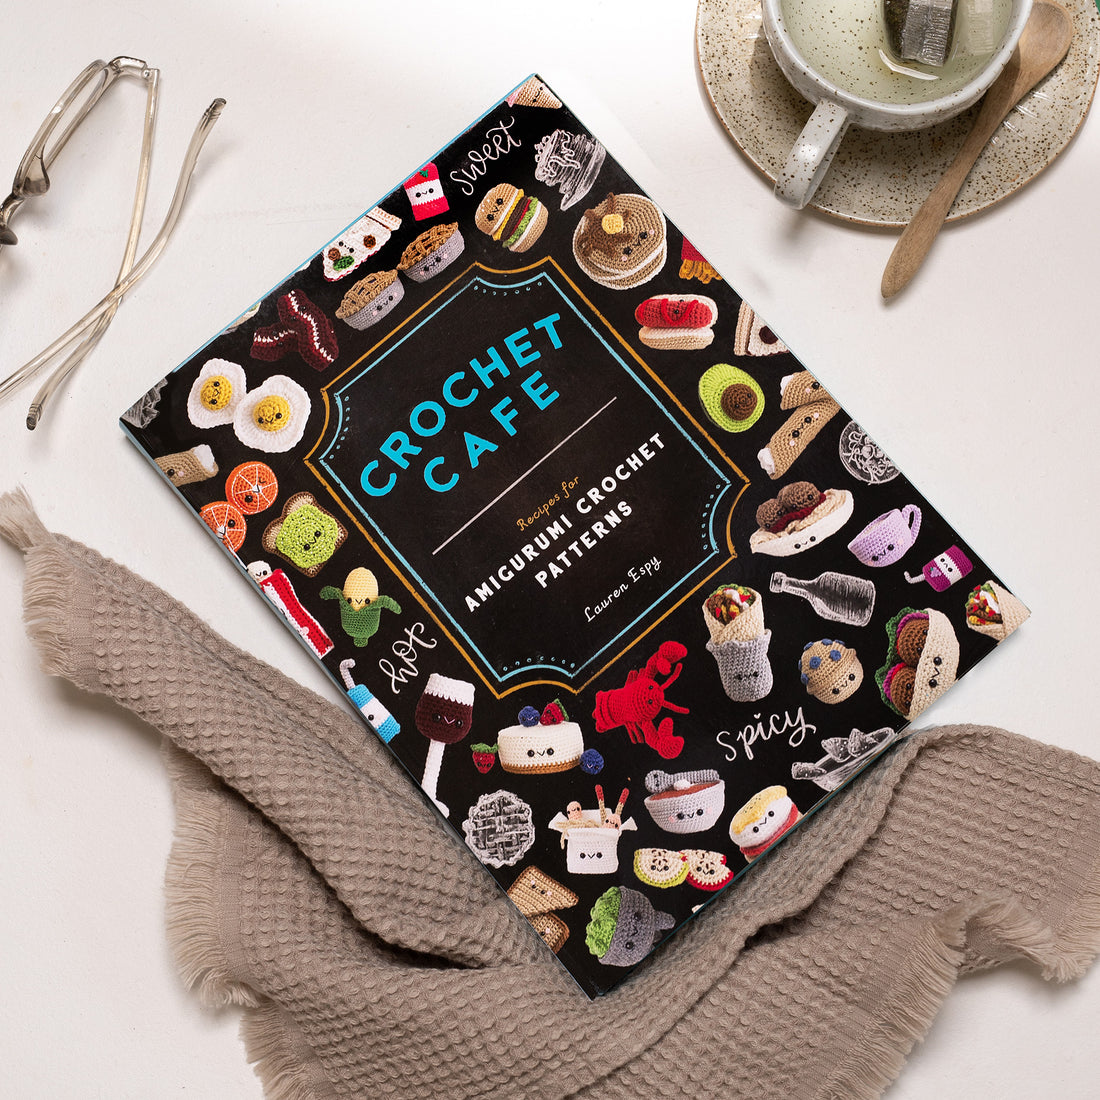 Crochet Cafe Crochet Pattern Book by Lauren Espy